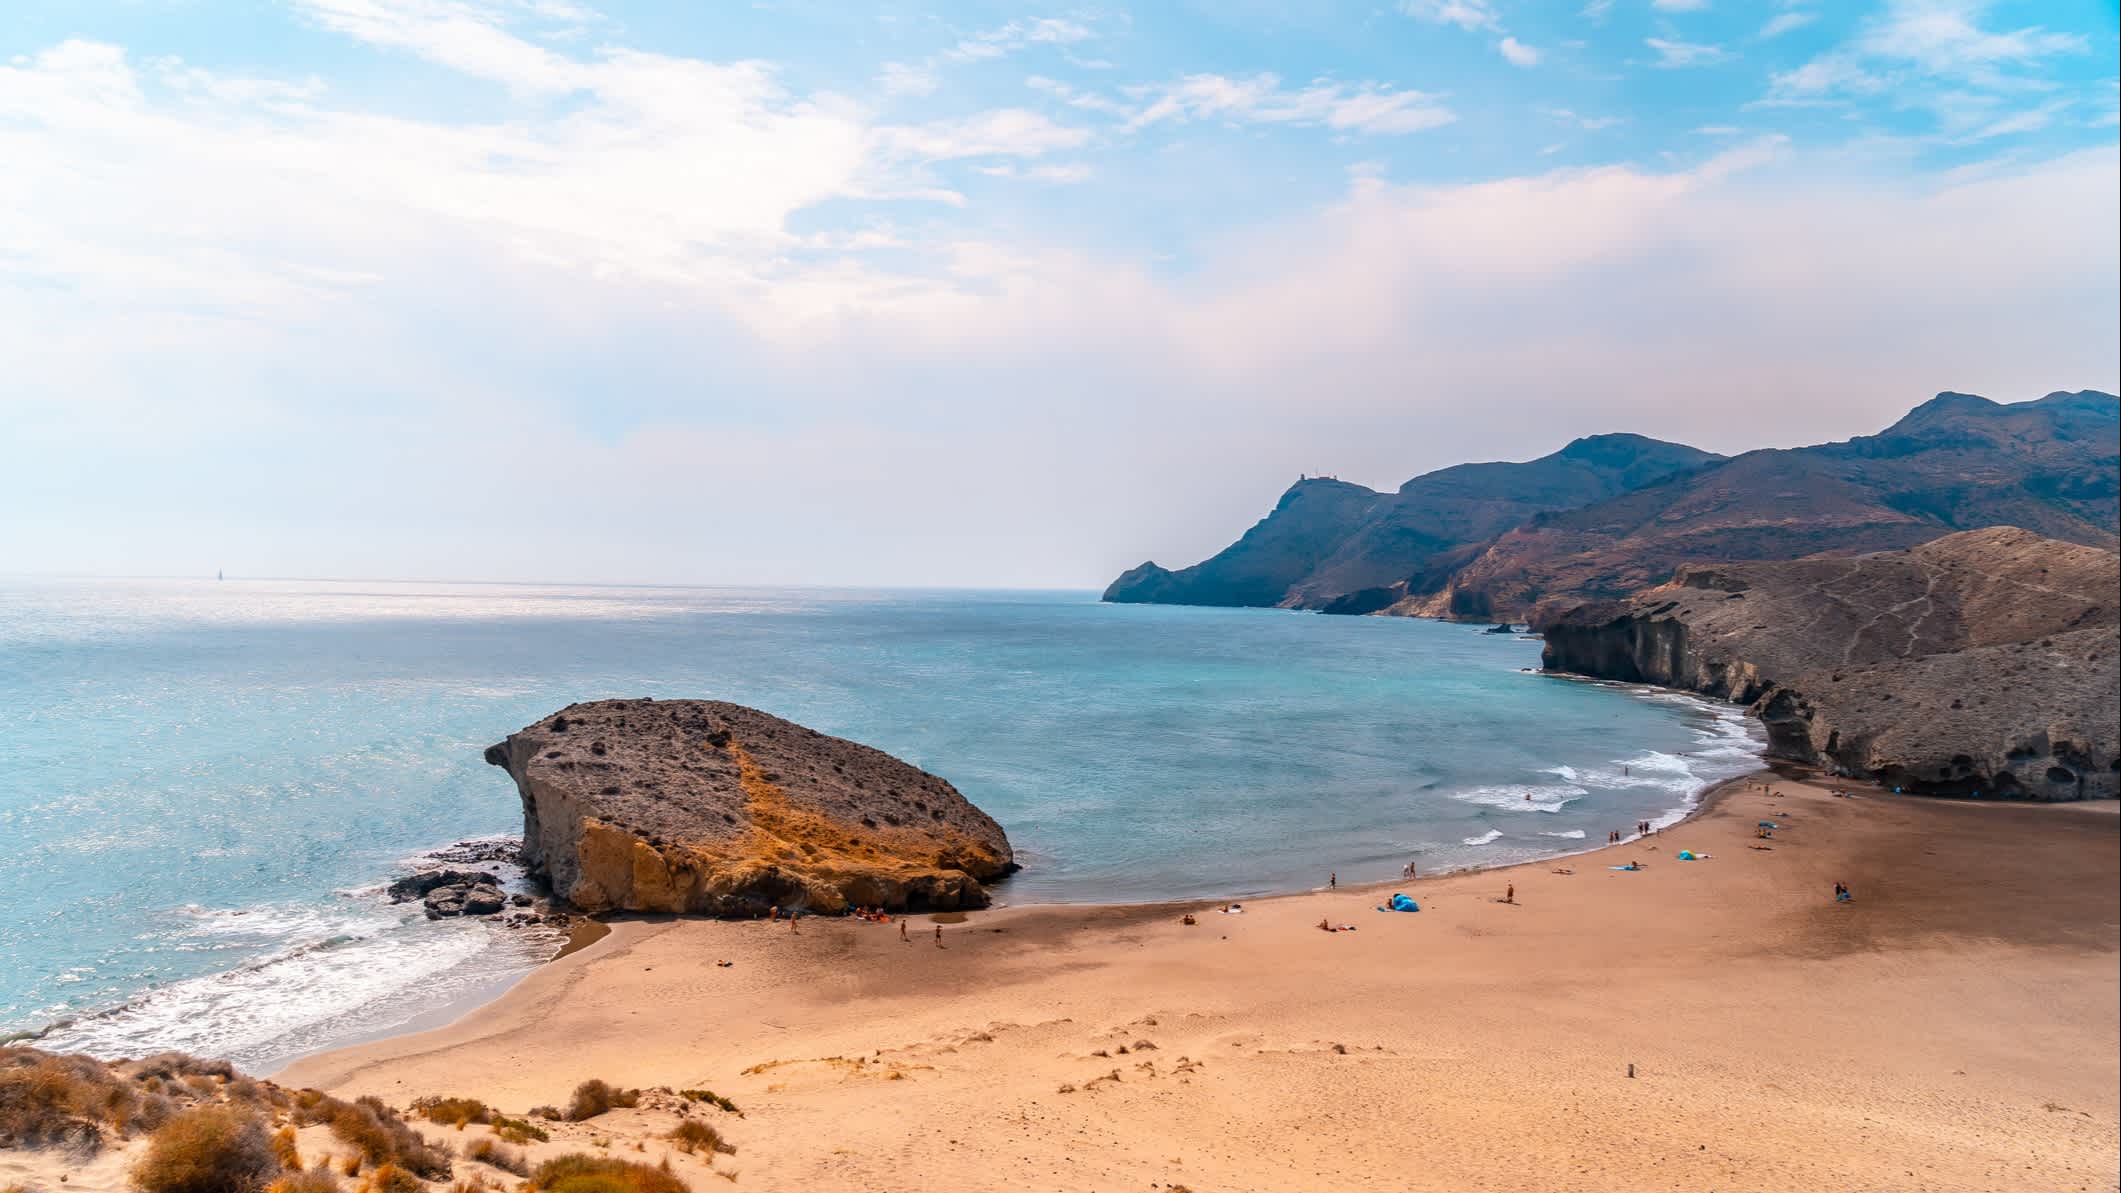 Vue sur le sable et les roches de la plage de Mónsul, Cabo de Gata en Espagne